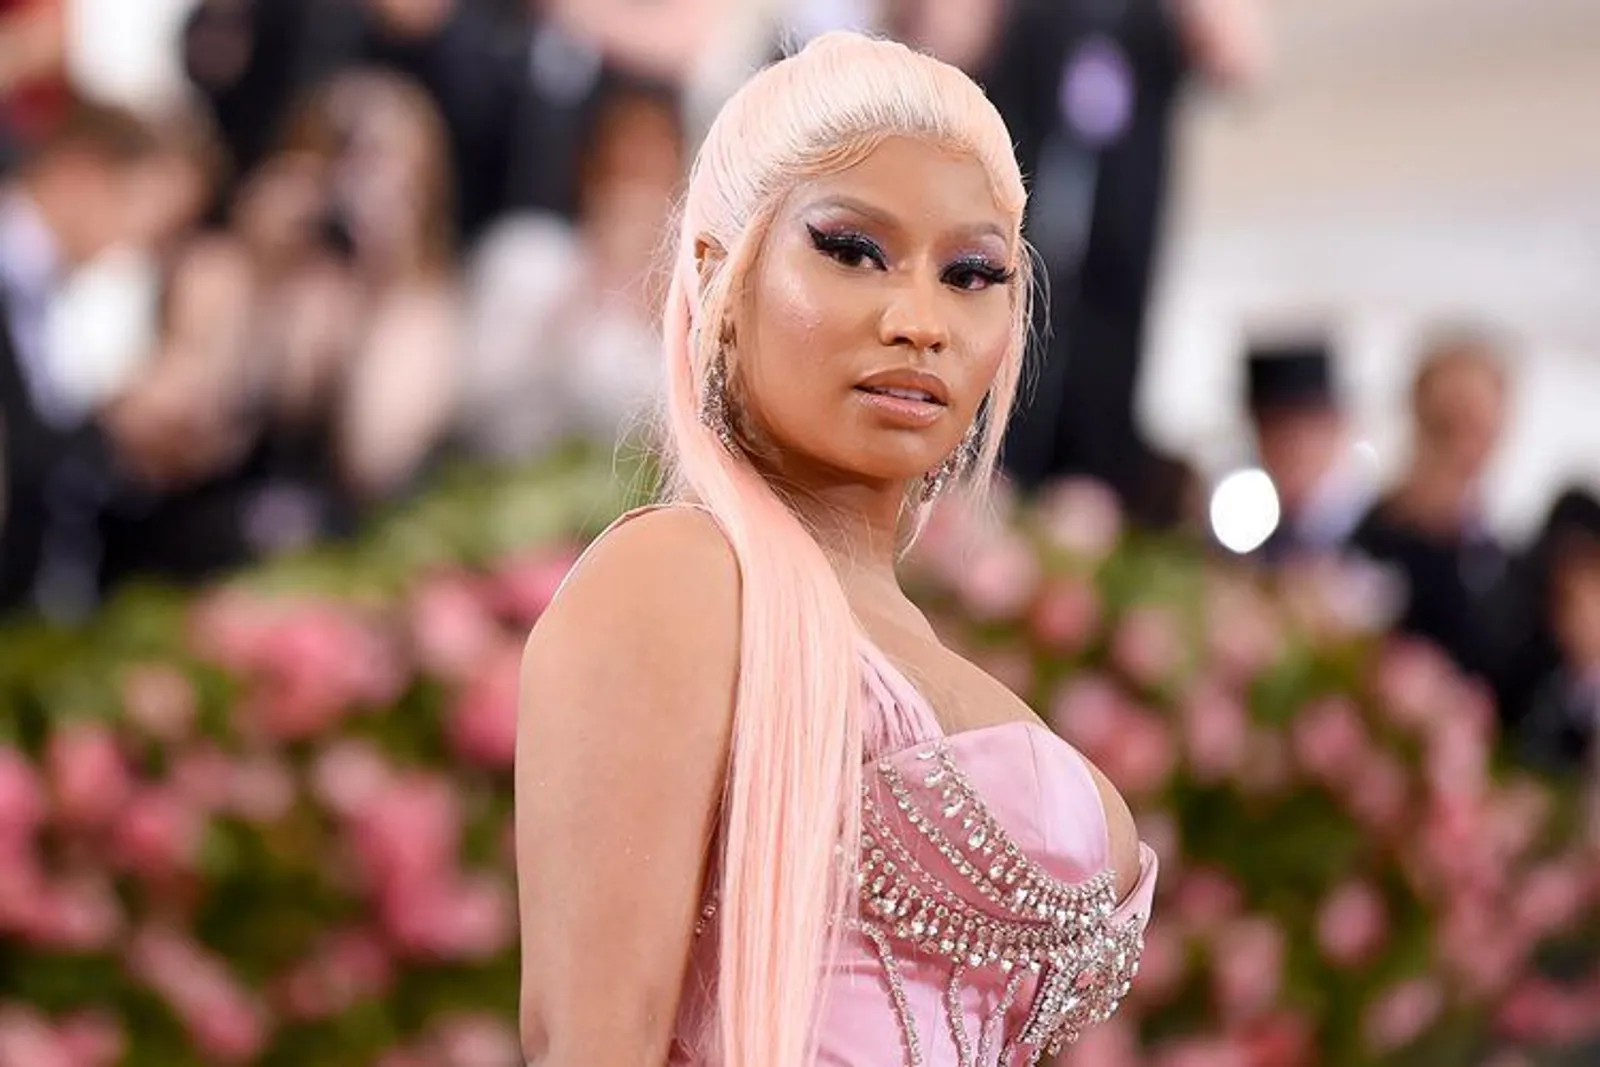 Ingin Berkeluarga, Alasan Nicki Minaj Mundur dari Dunia Musik?